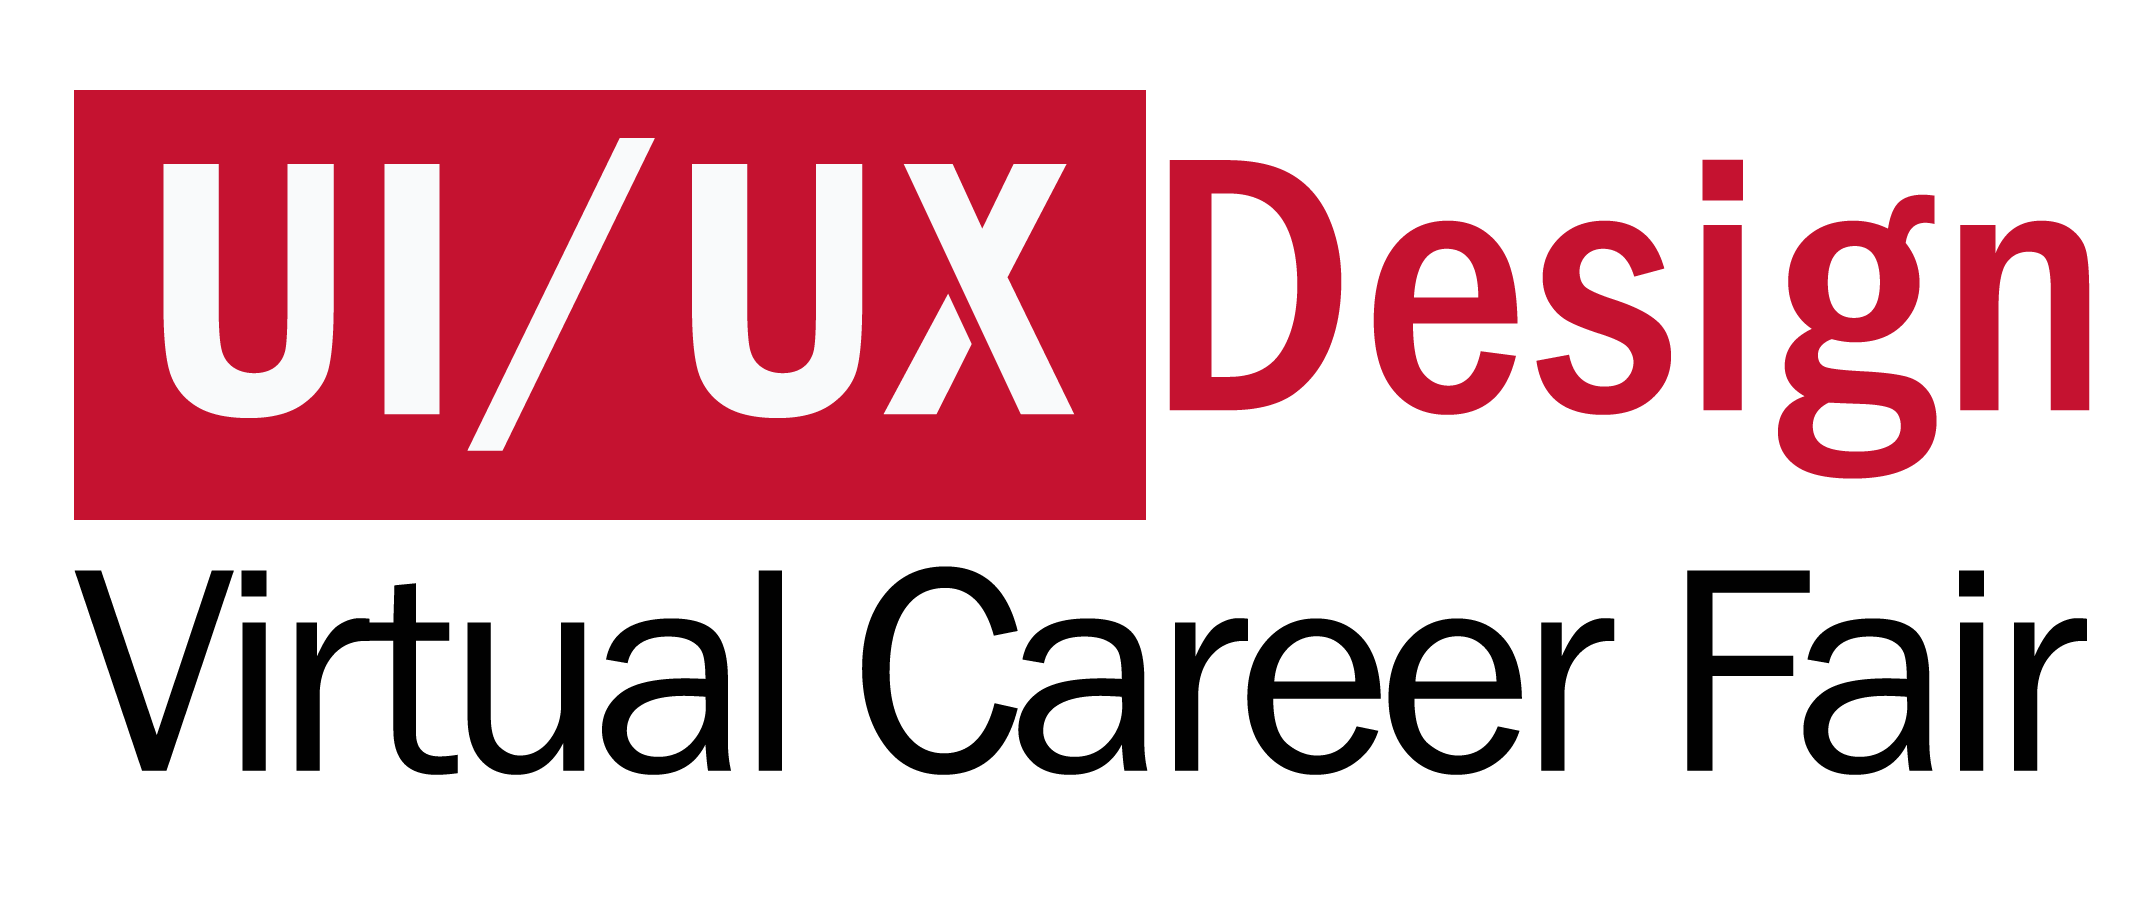 ui.ux-virtual-career-fair-logo-trimmed.png